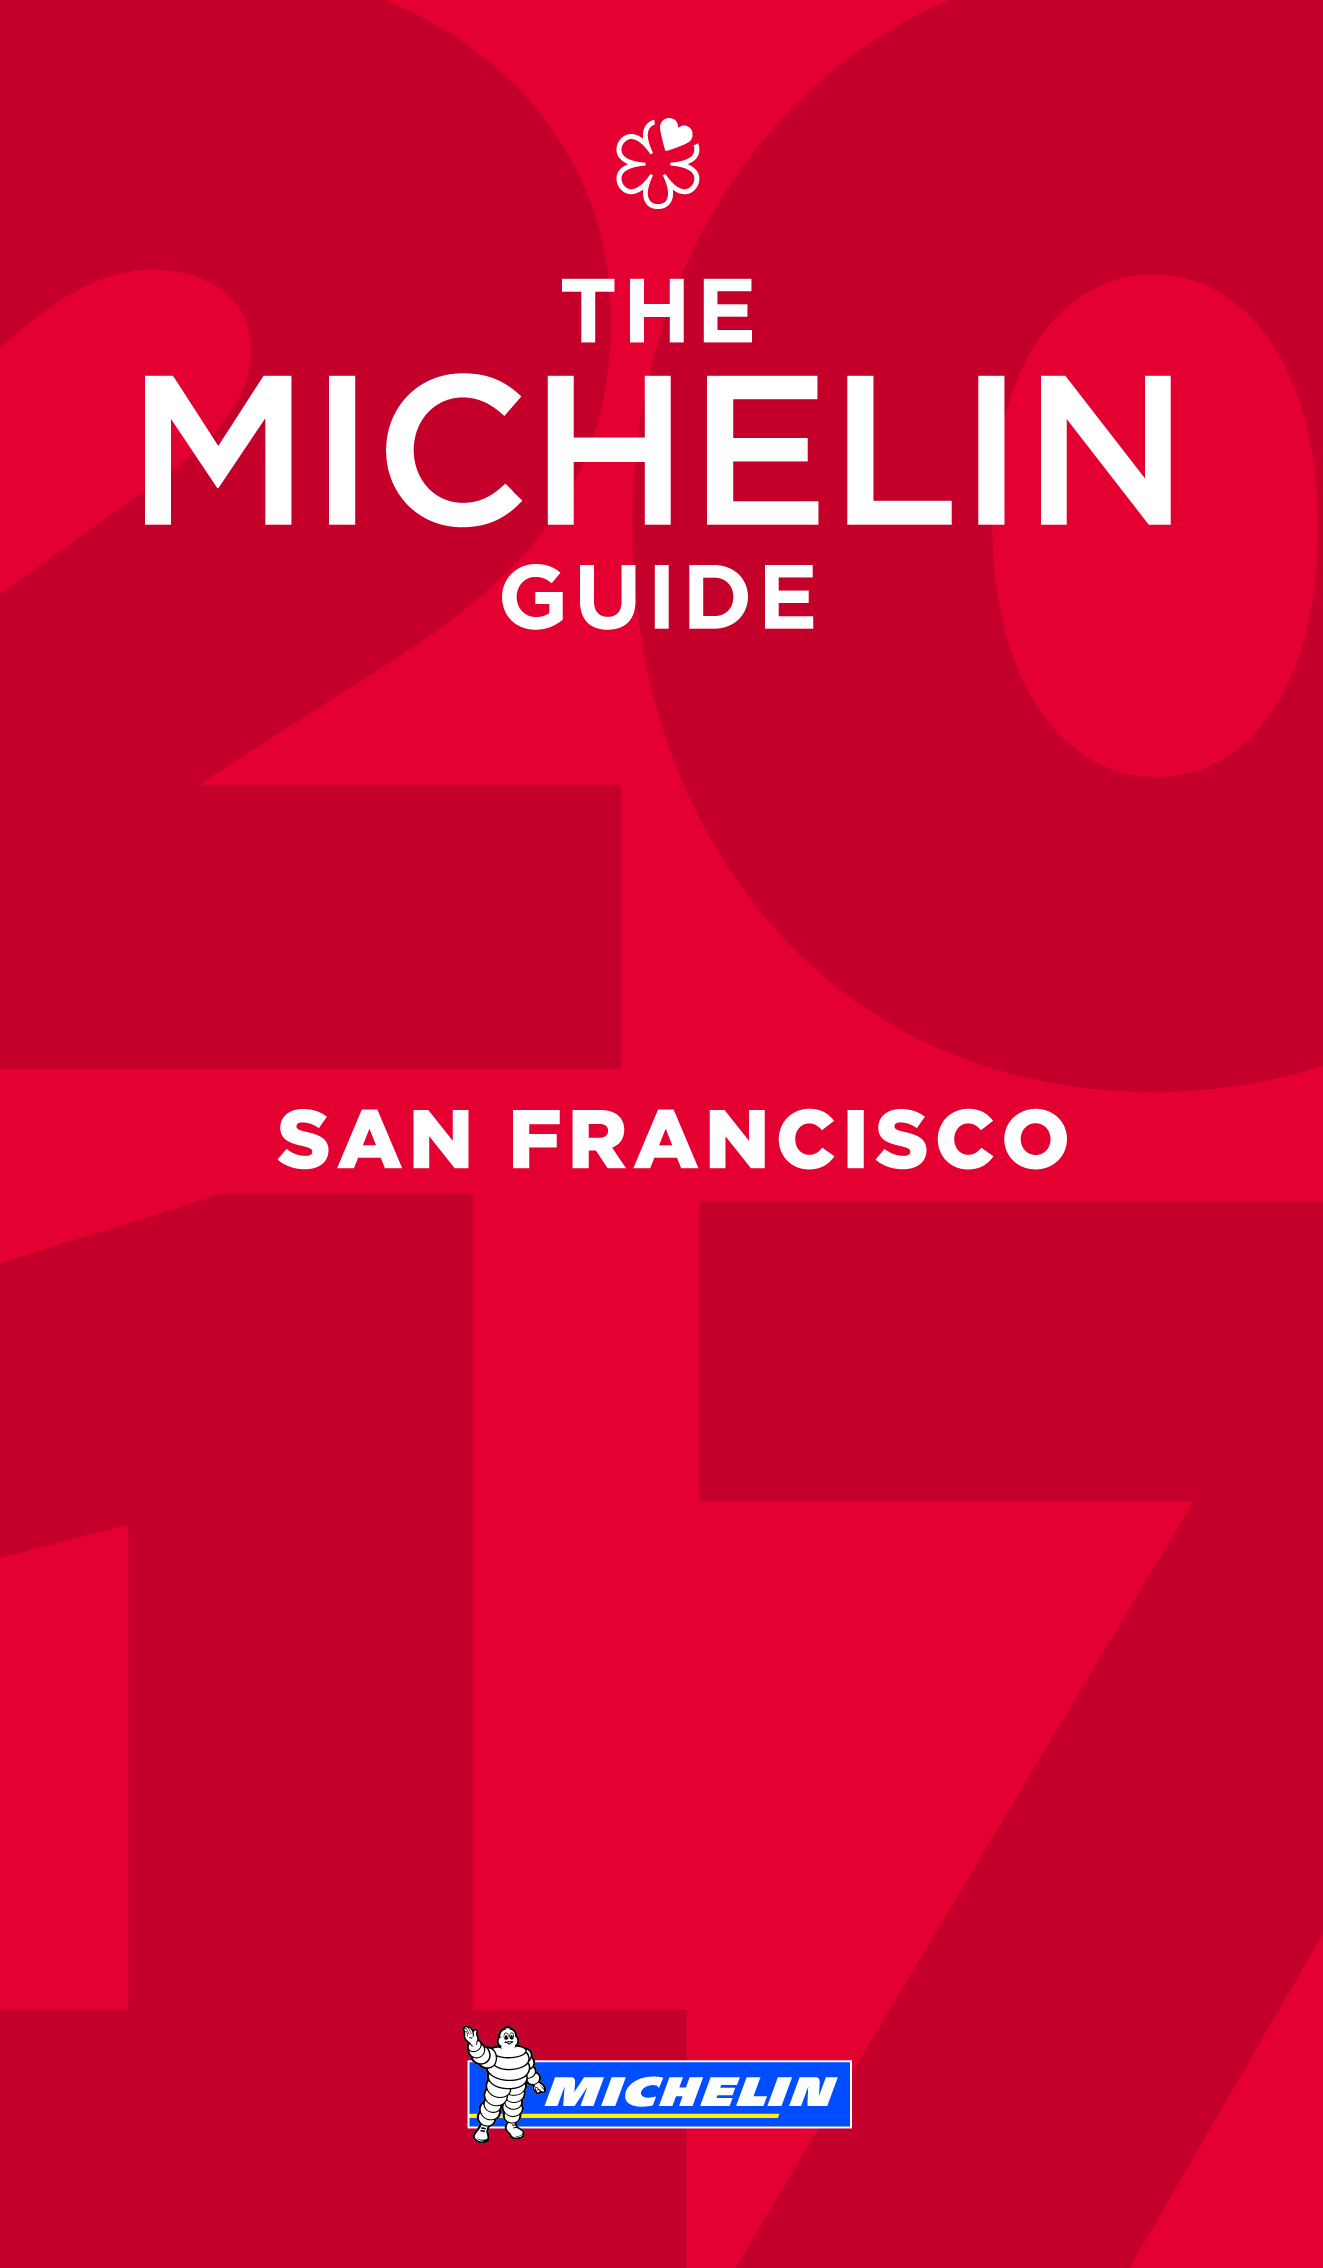 La guía MICHELIN San Francisco 2017